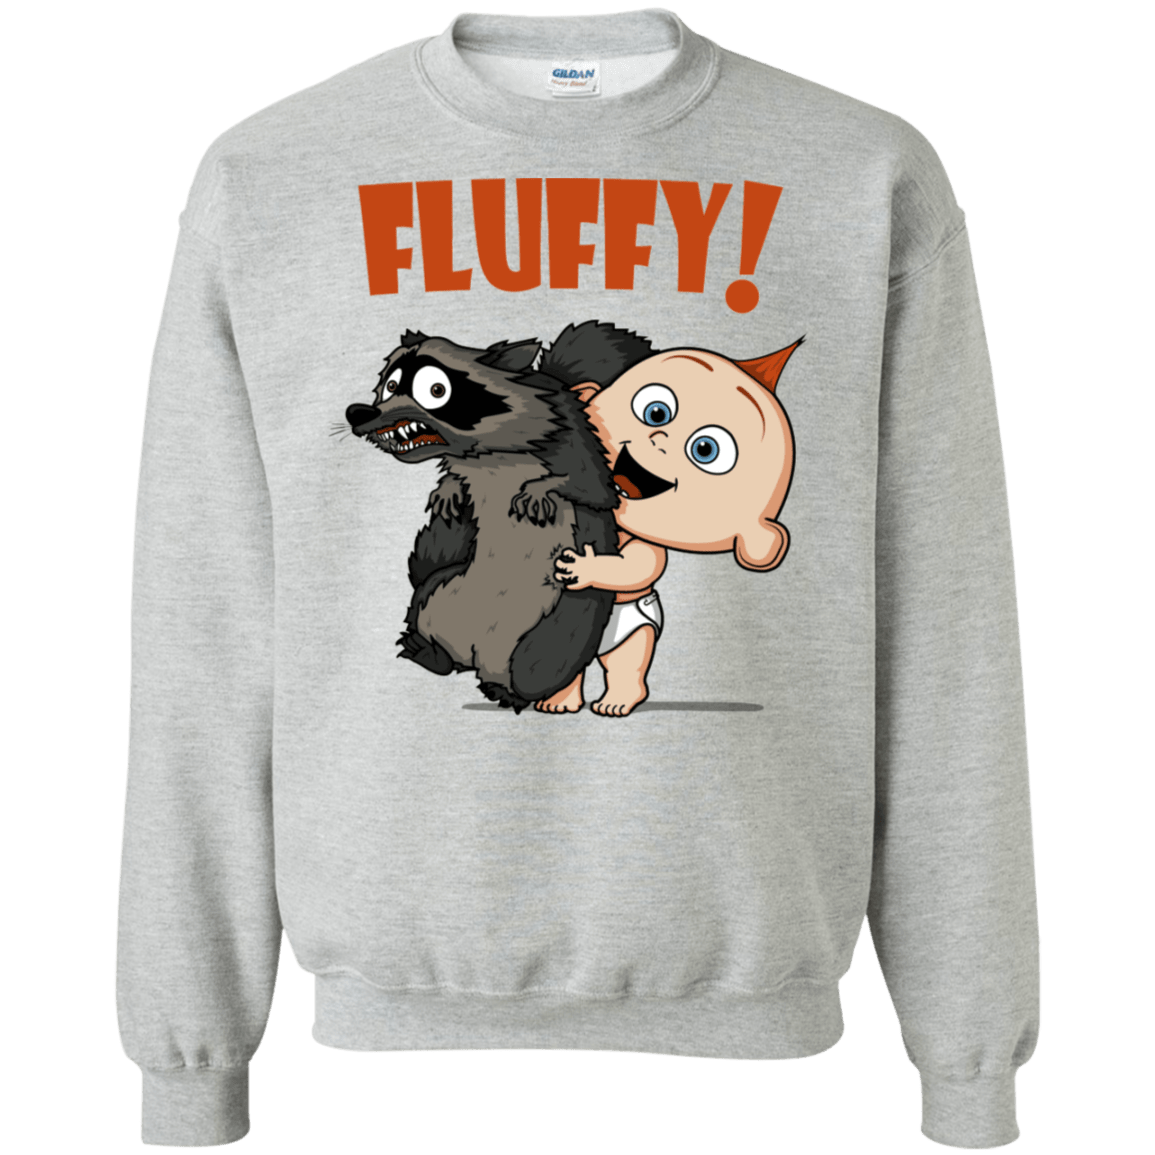 Sweatshirts Sport Grey / S Fluffy Raccoon Crewneck Sweatshirt